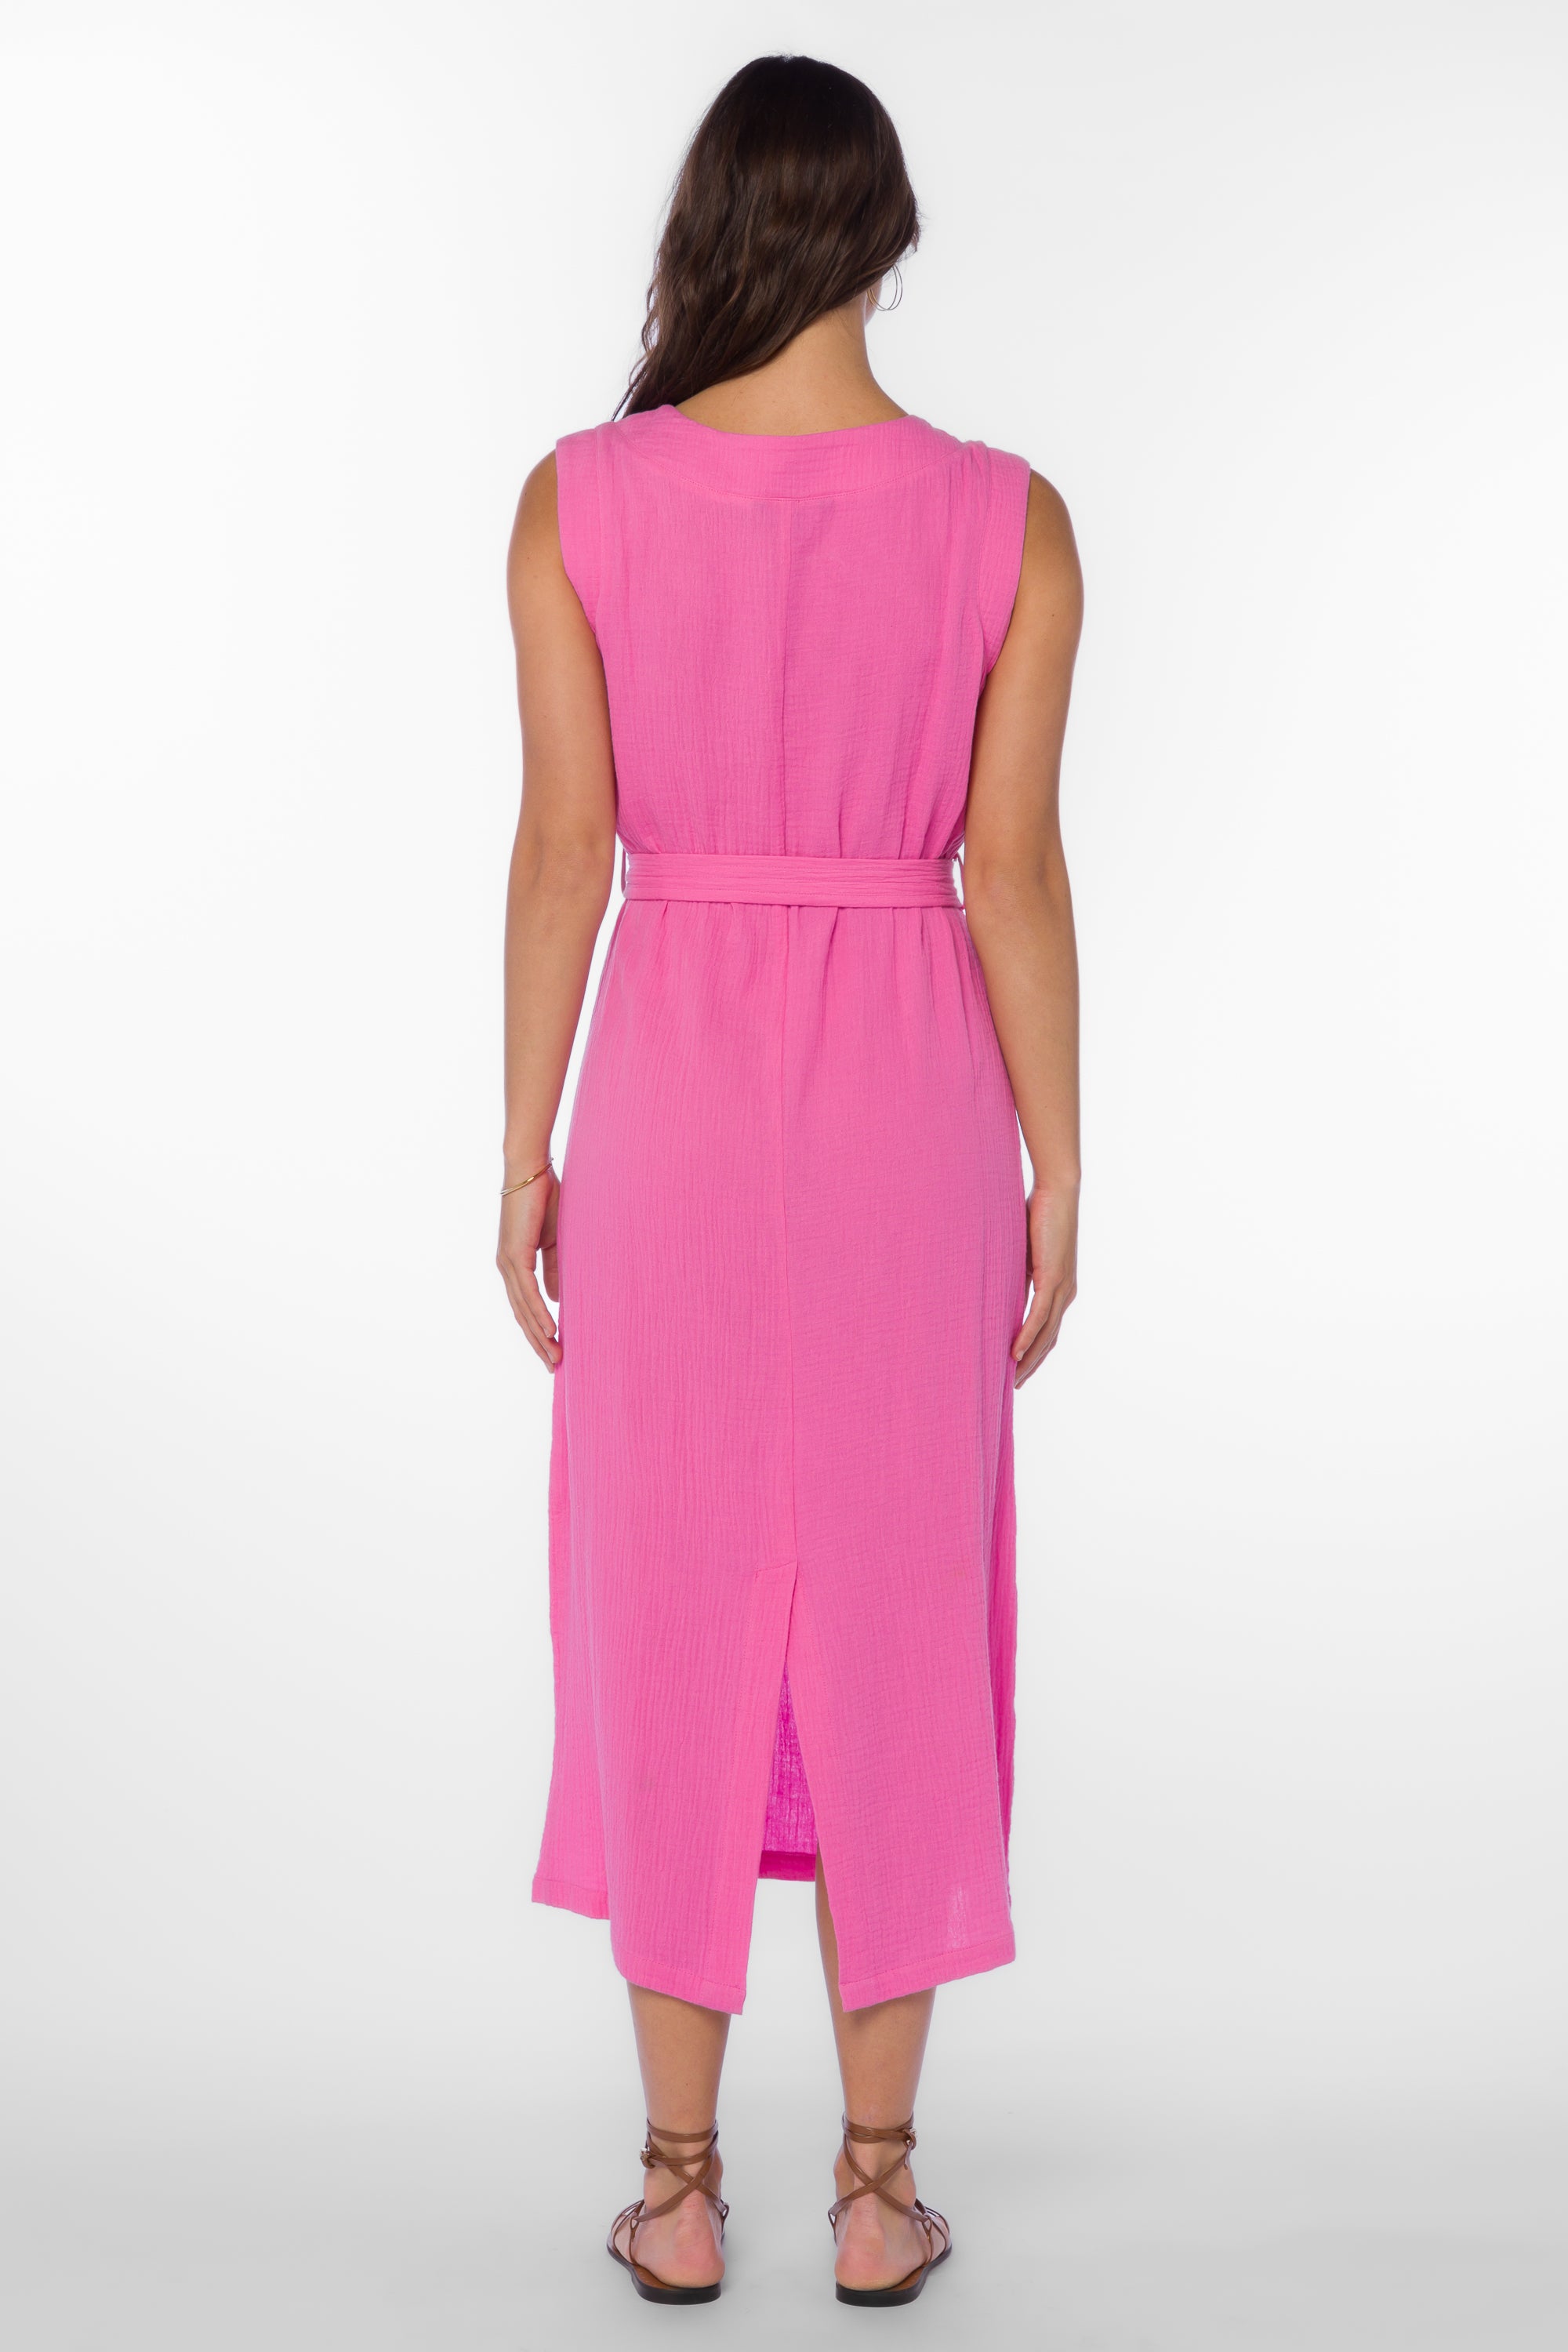 Aurelie Bright Pink Dress - Dresses - Velvet Heart Clothing